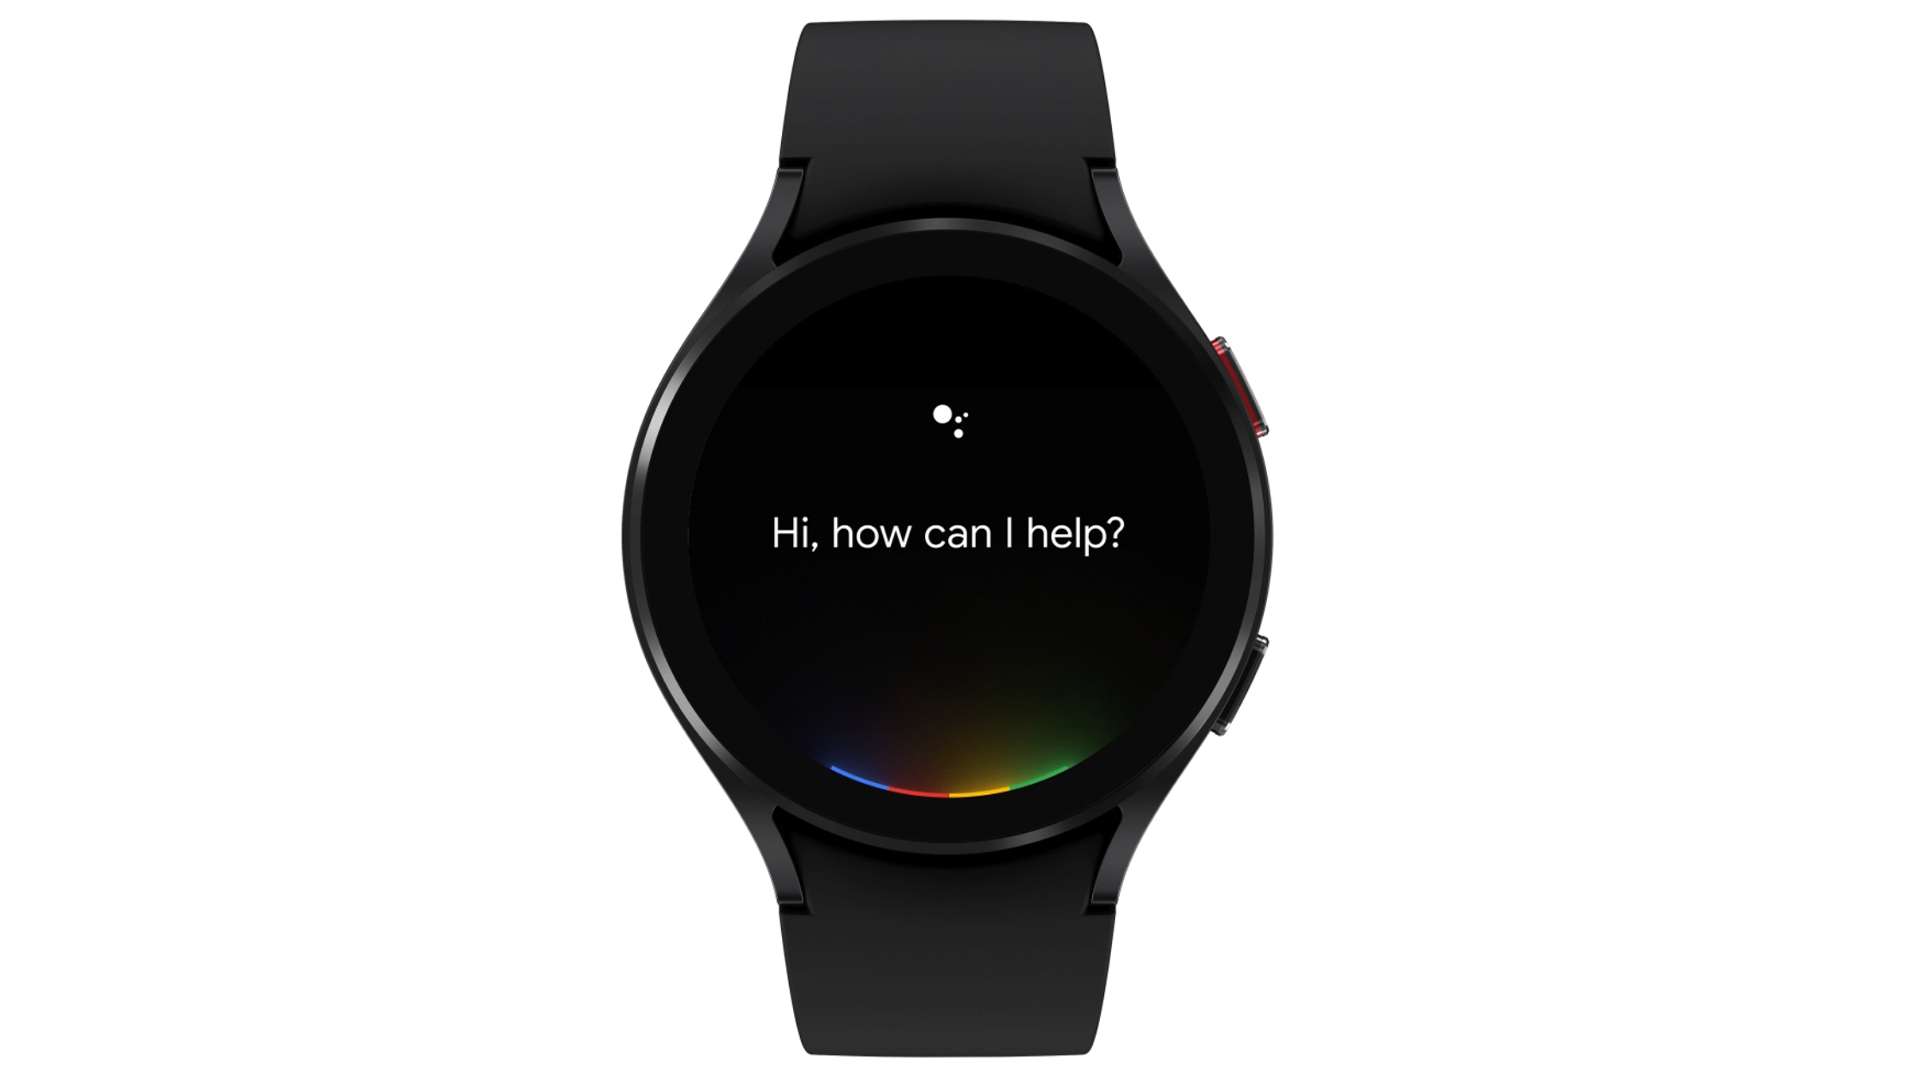 La Galaxy Watch 4 équipée de Google Assistant